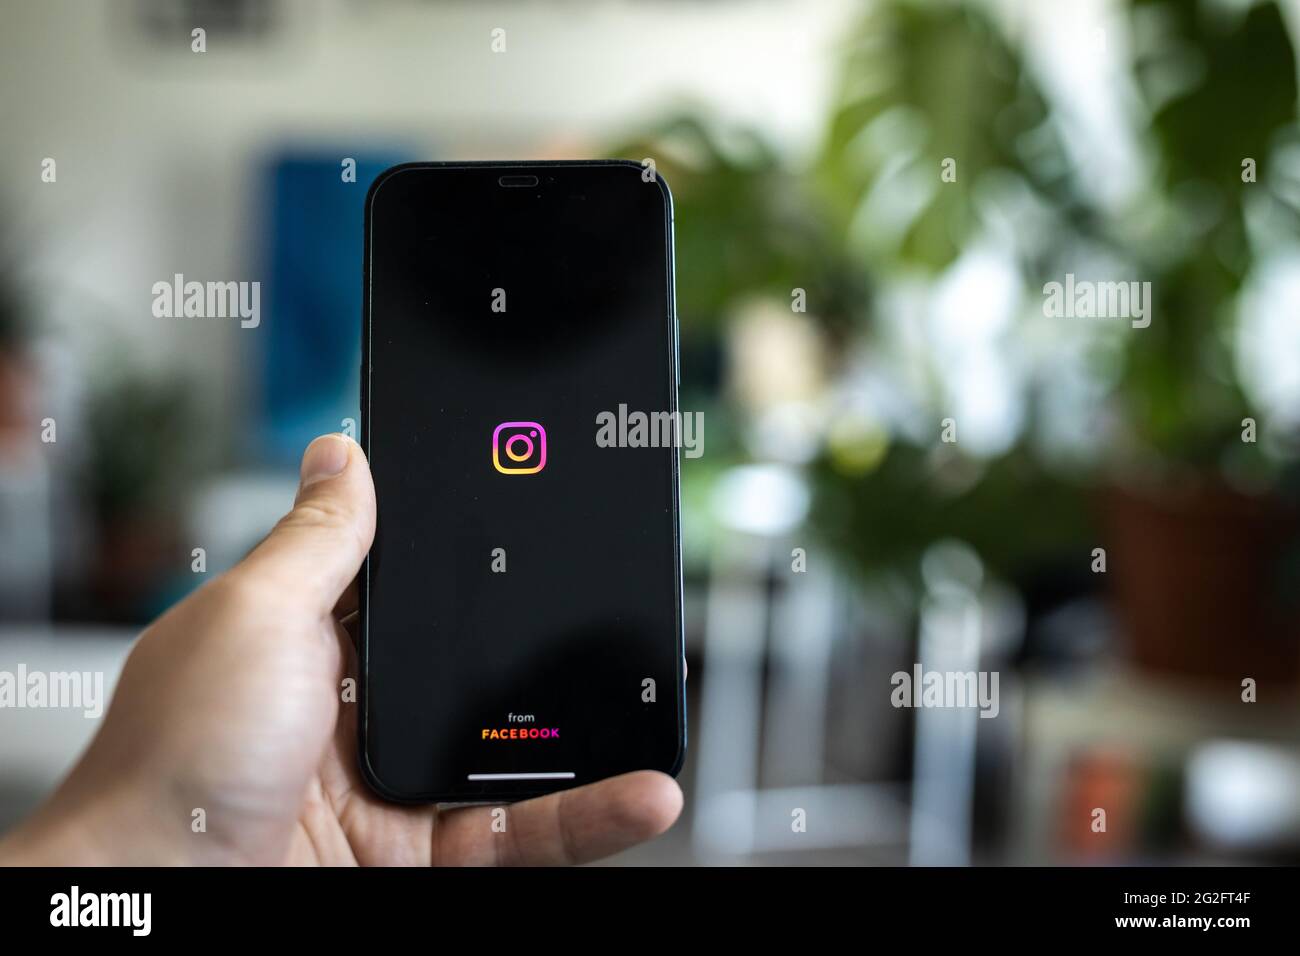 Ouverture de l'application Instagram, telle qu'elle apparaît sur l'écran du téléphone Banque D'Images